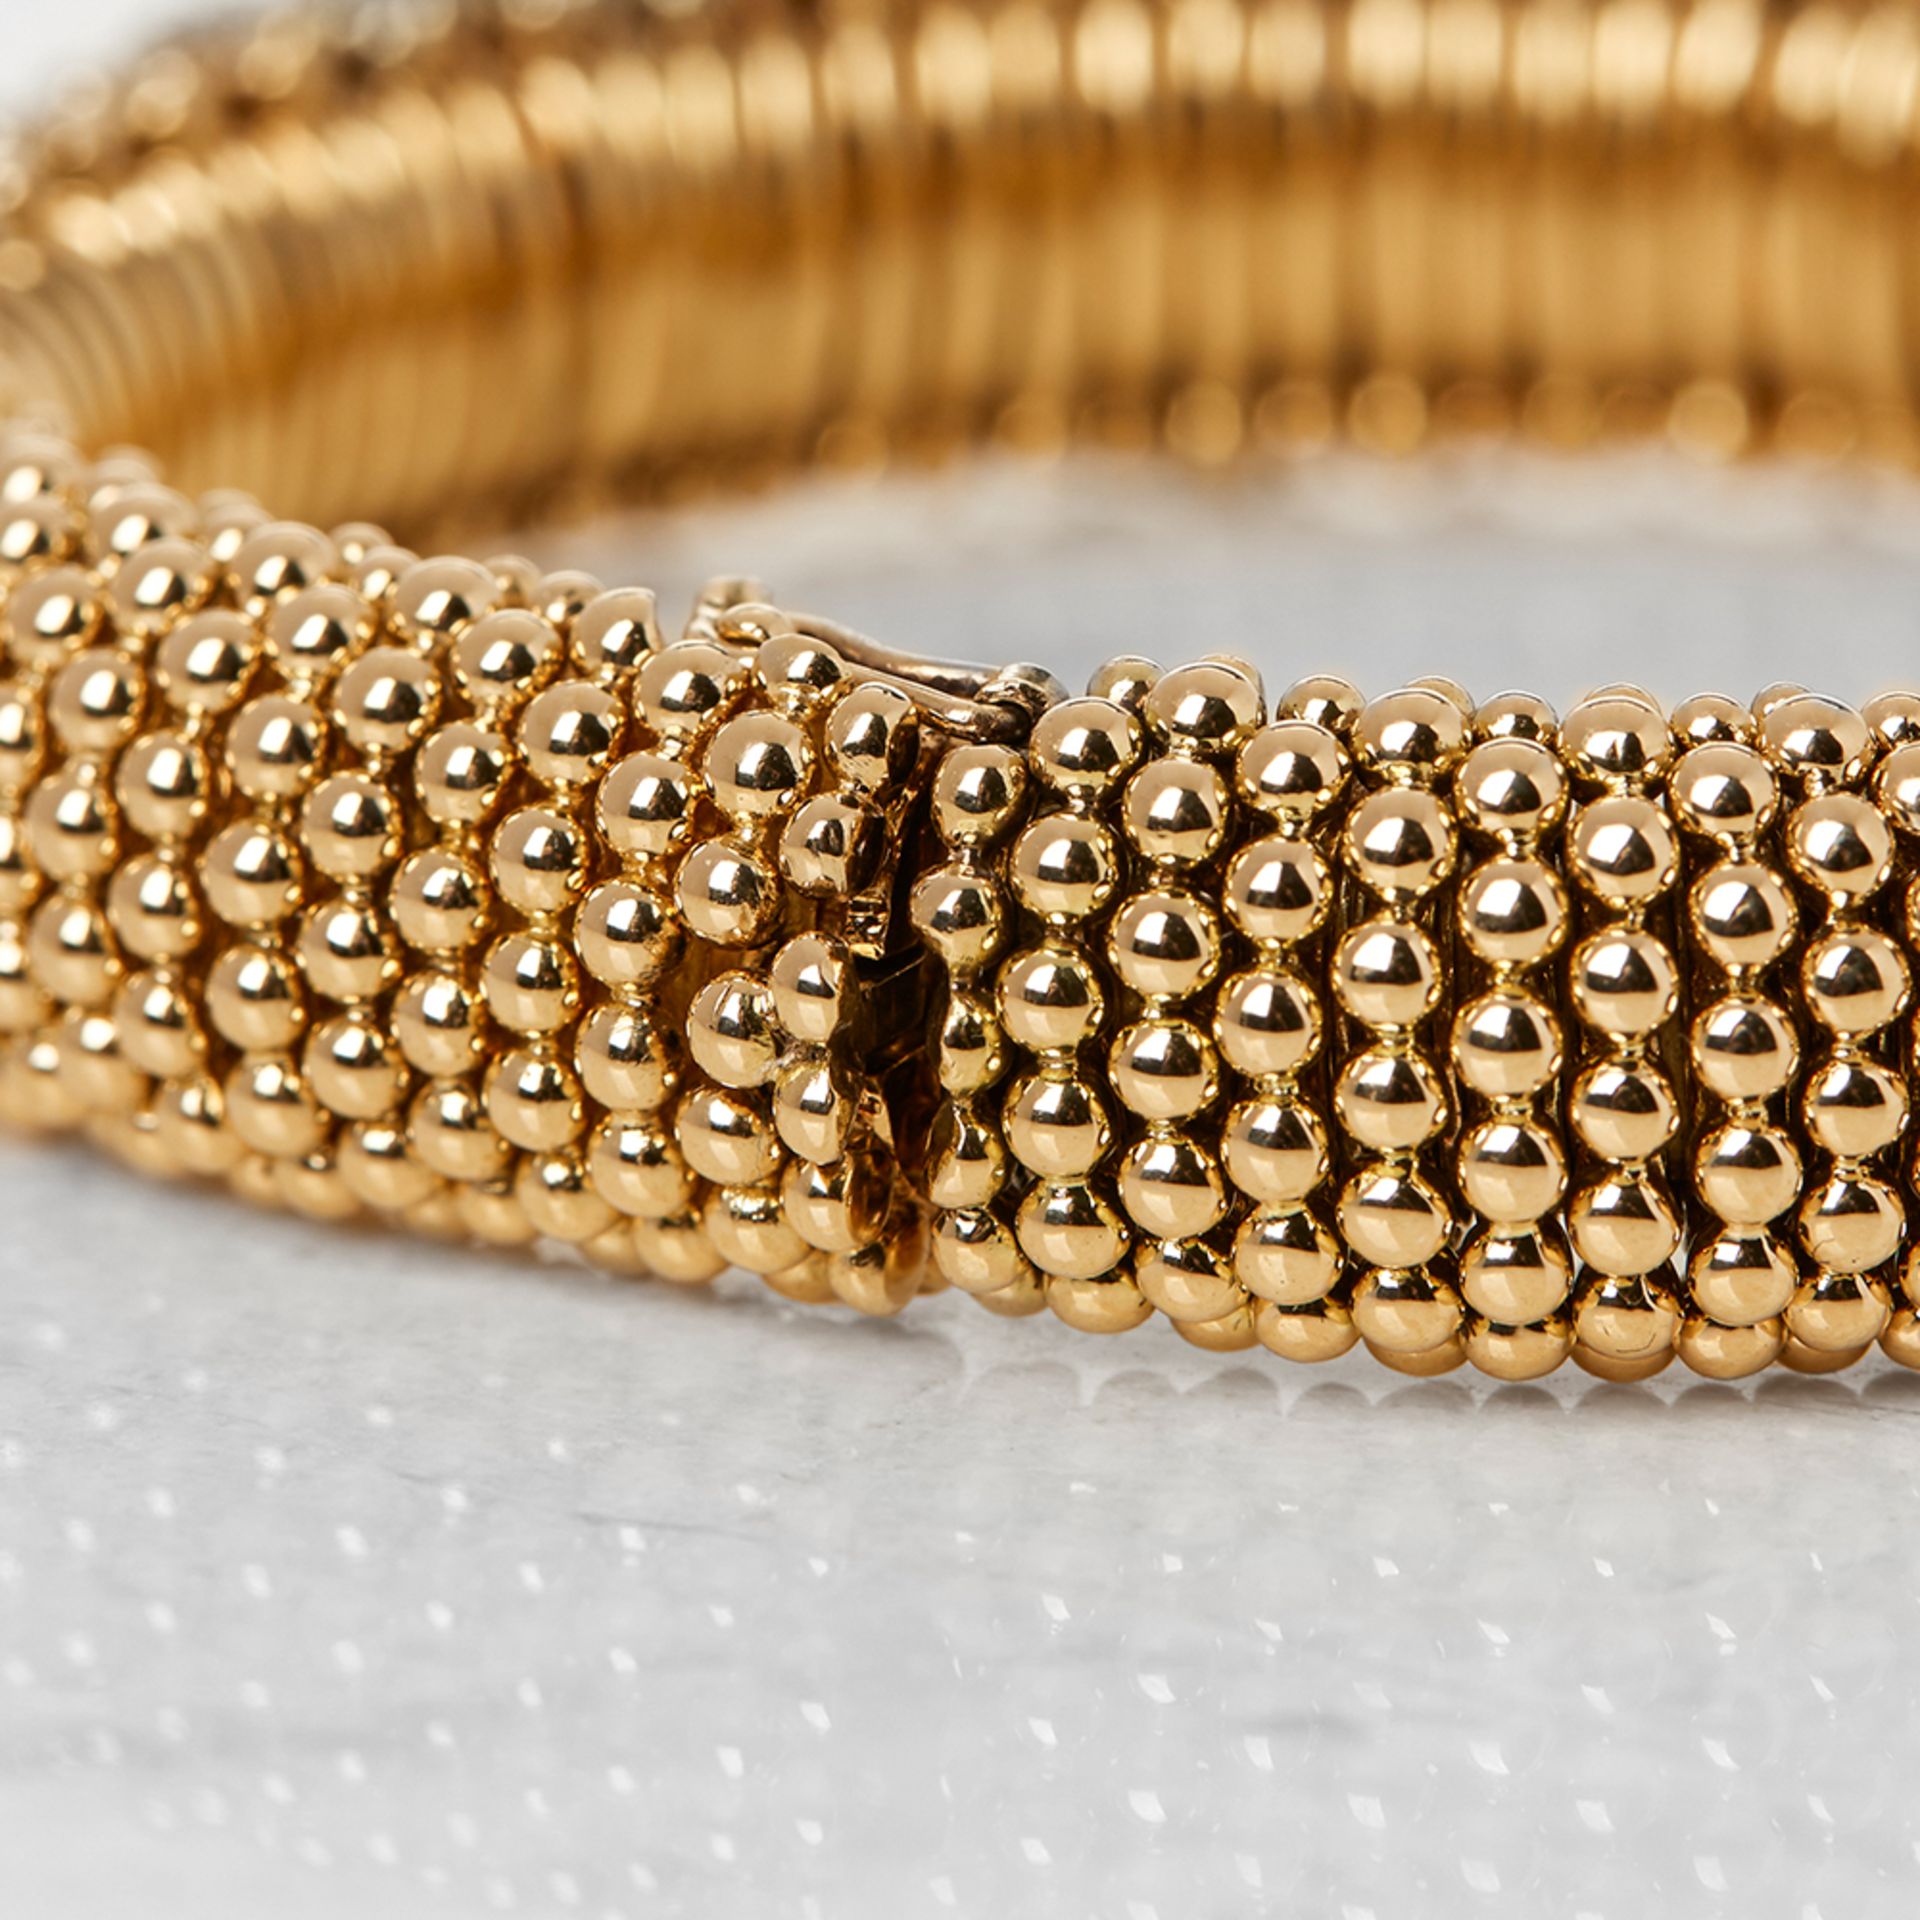 Van Cleef & Arpels 18k Yellow Gold Ruby & Diamond Bracelet - Image 4 of 7